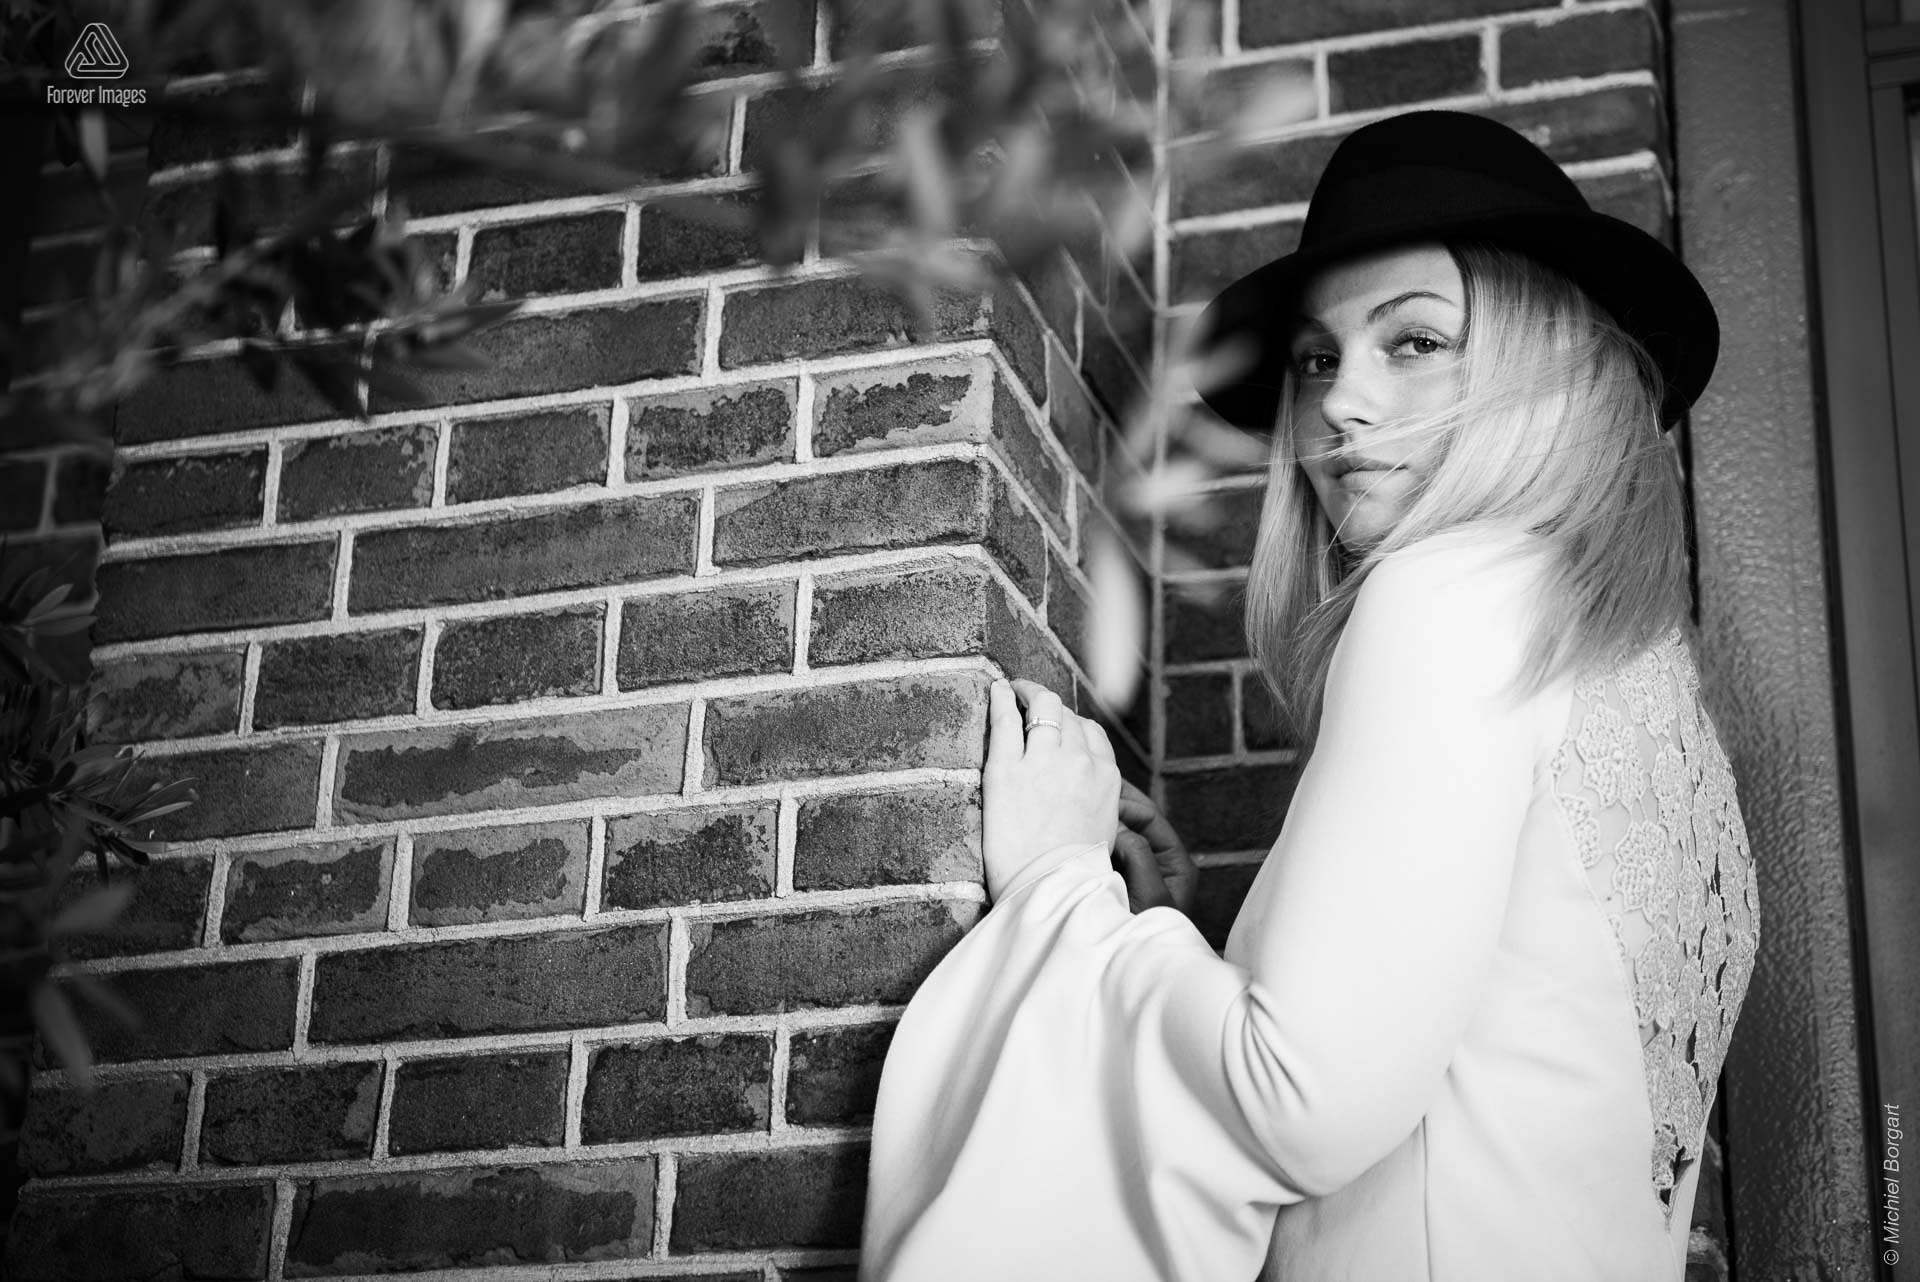 Portretfoto zwart-wit jonge dame beschut in de wind zwarte hoed | Porscha Luna de Jong Happyhappyjoyjoy | Portretfotograaf Michiel Borgart - Forever Images.